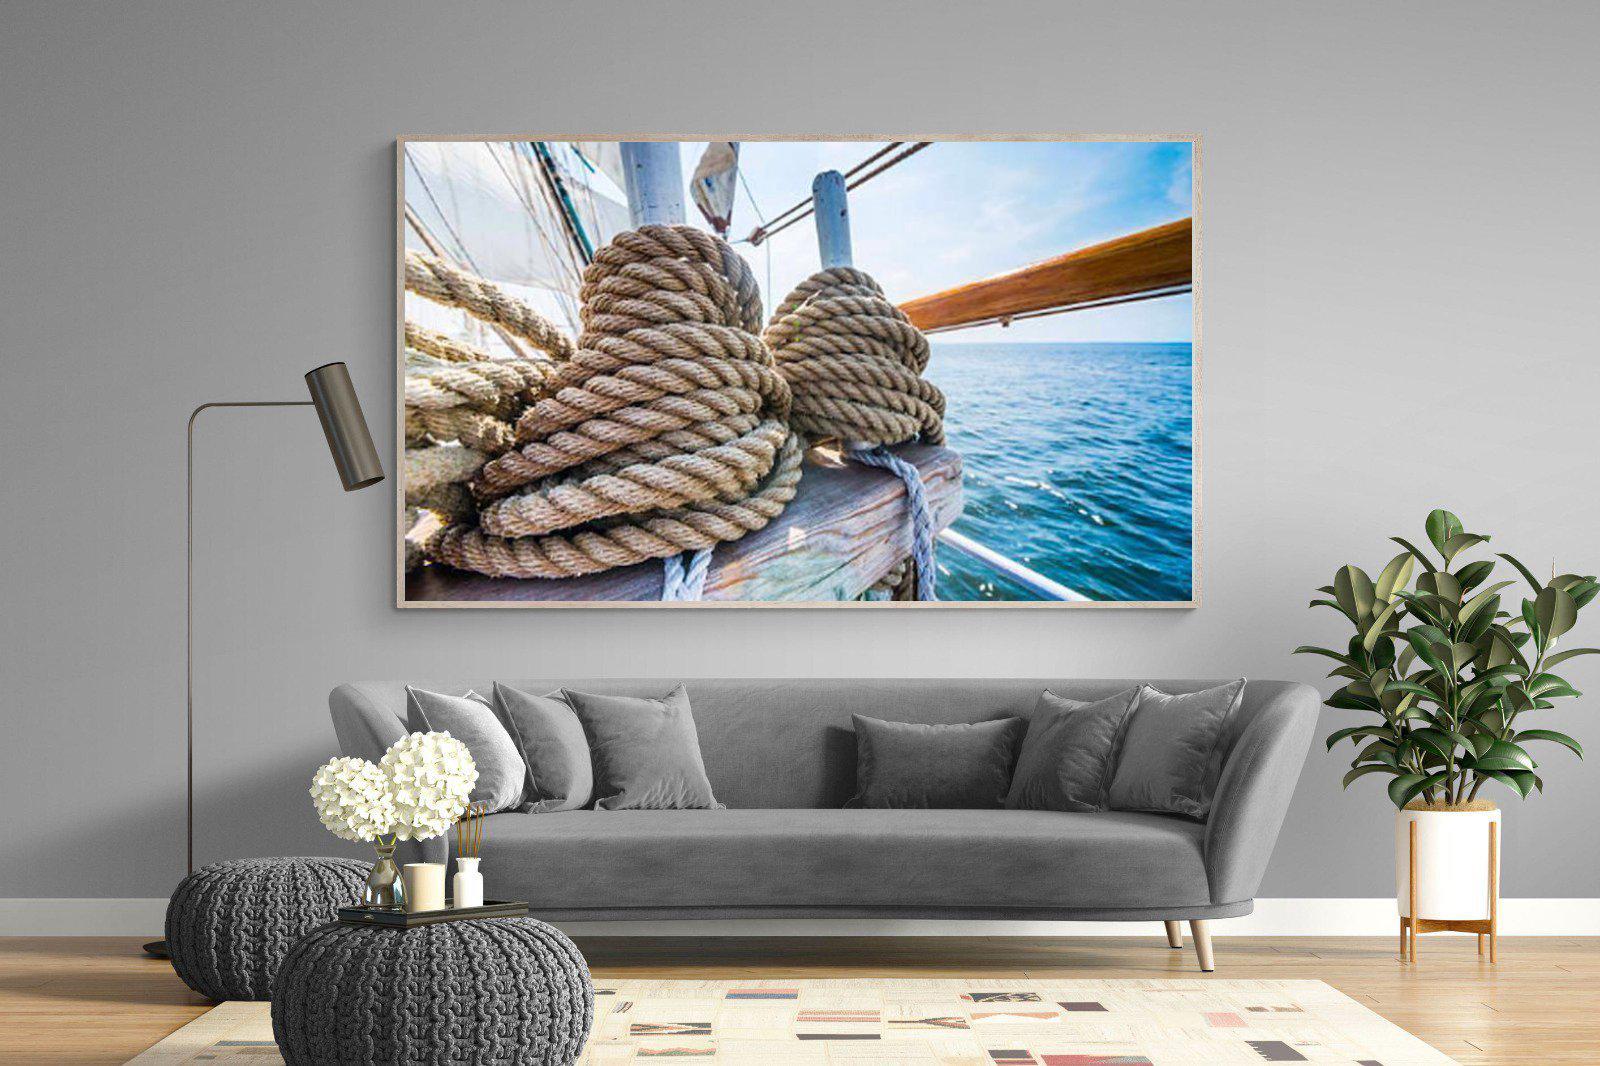 Set Sail-Wall_Art-220 x 130cm-Mounted Canvas-Wood-Pixalot